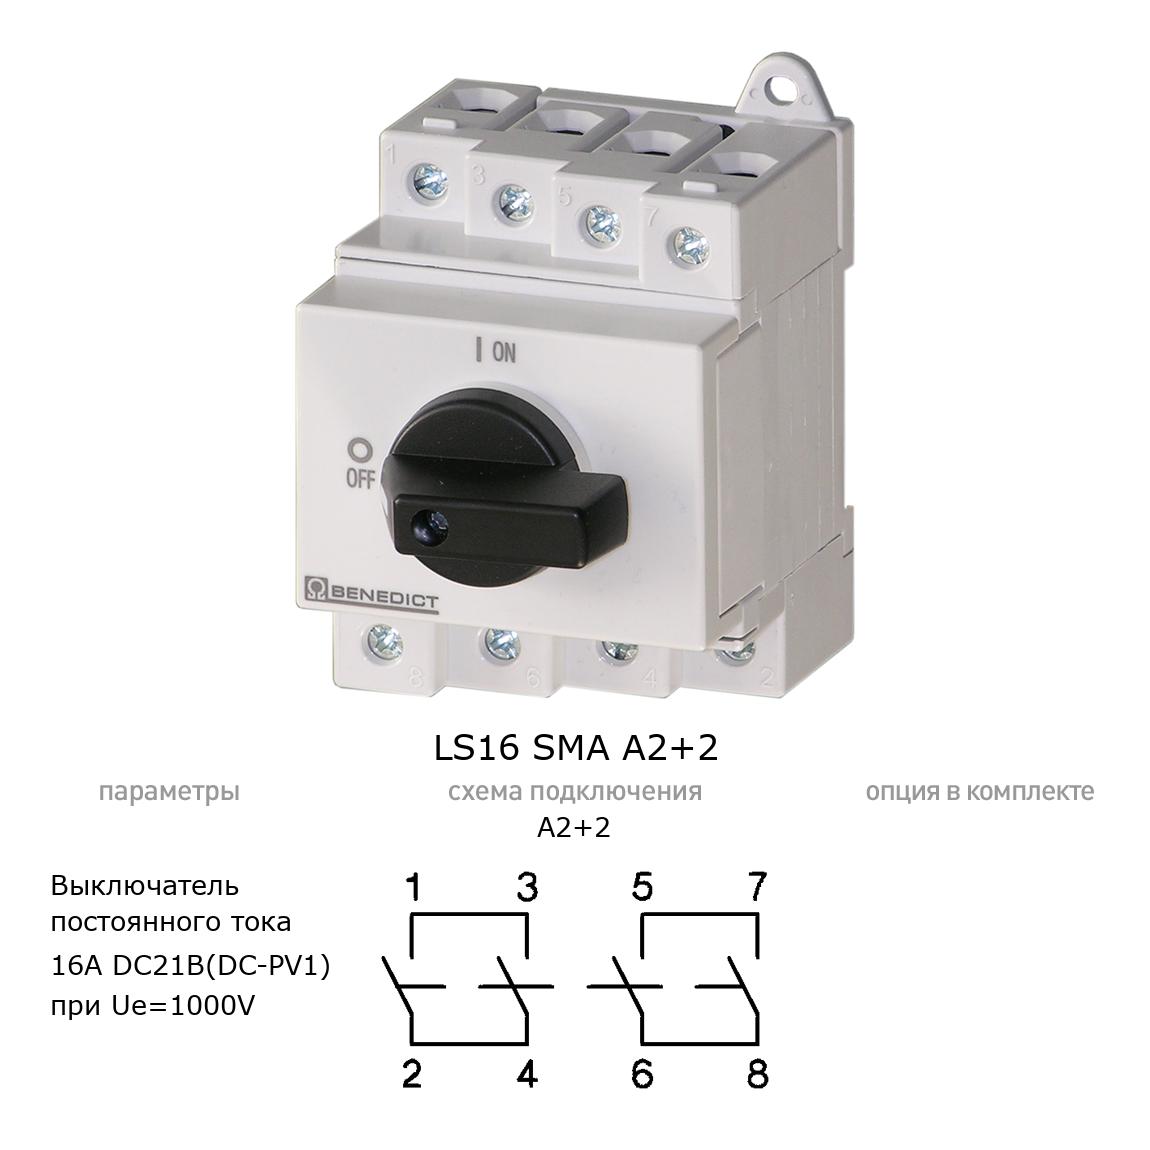 Кулачковый переключатель для постоянного тока (DC) LS16 SMA A2+2 BENEDICT